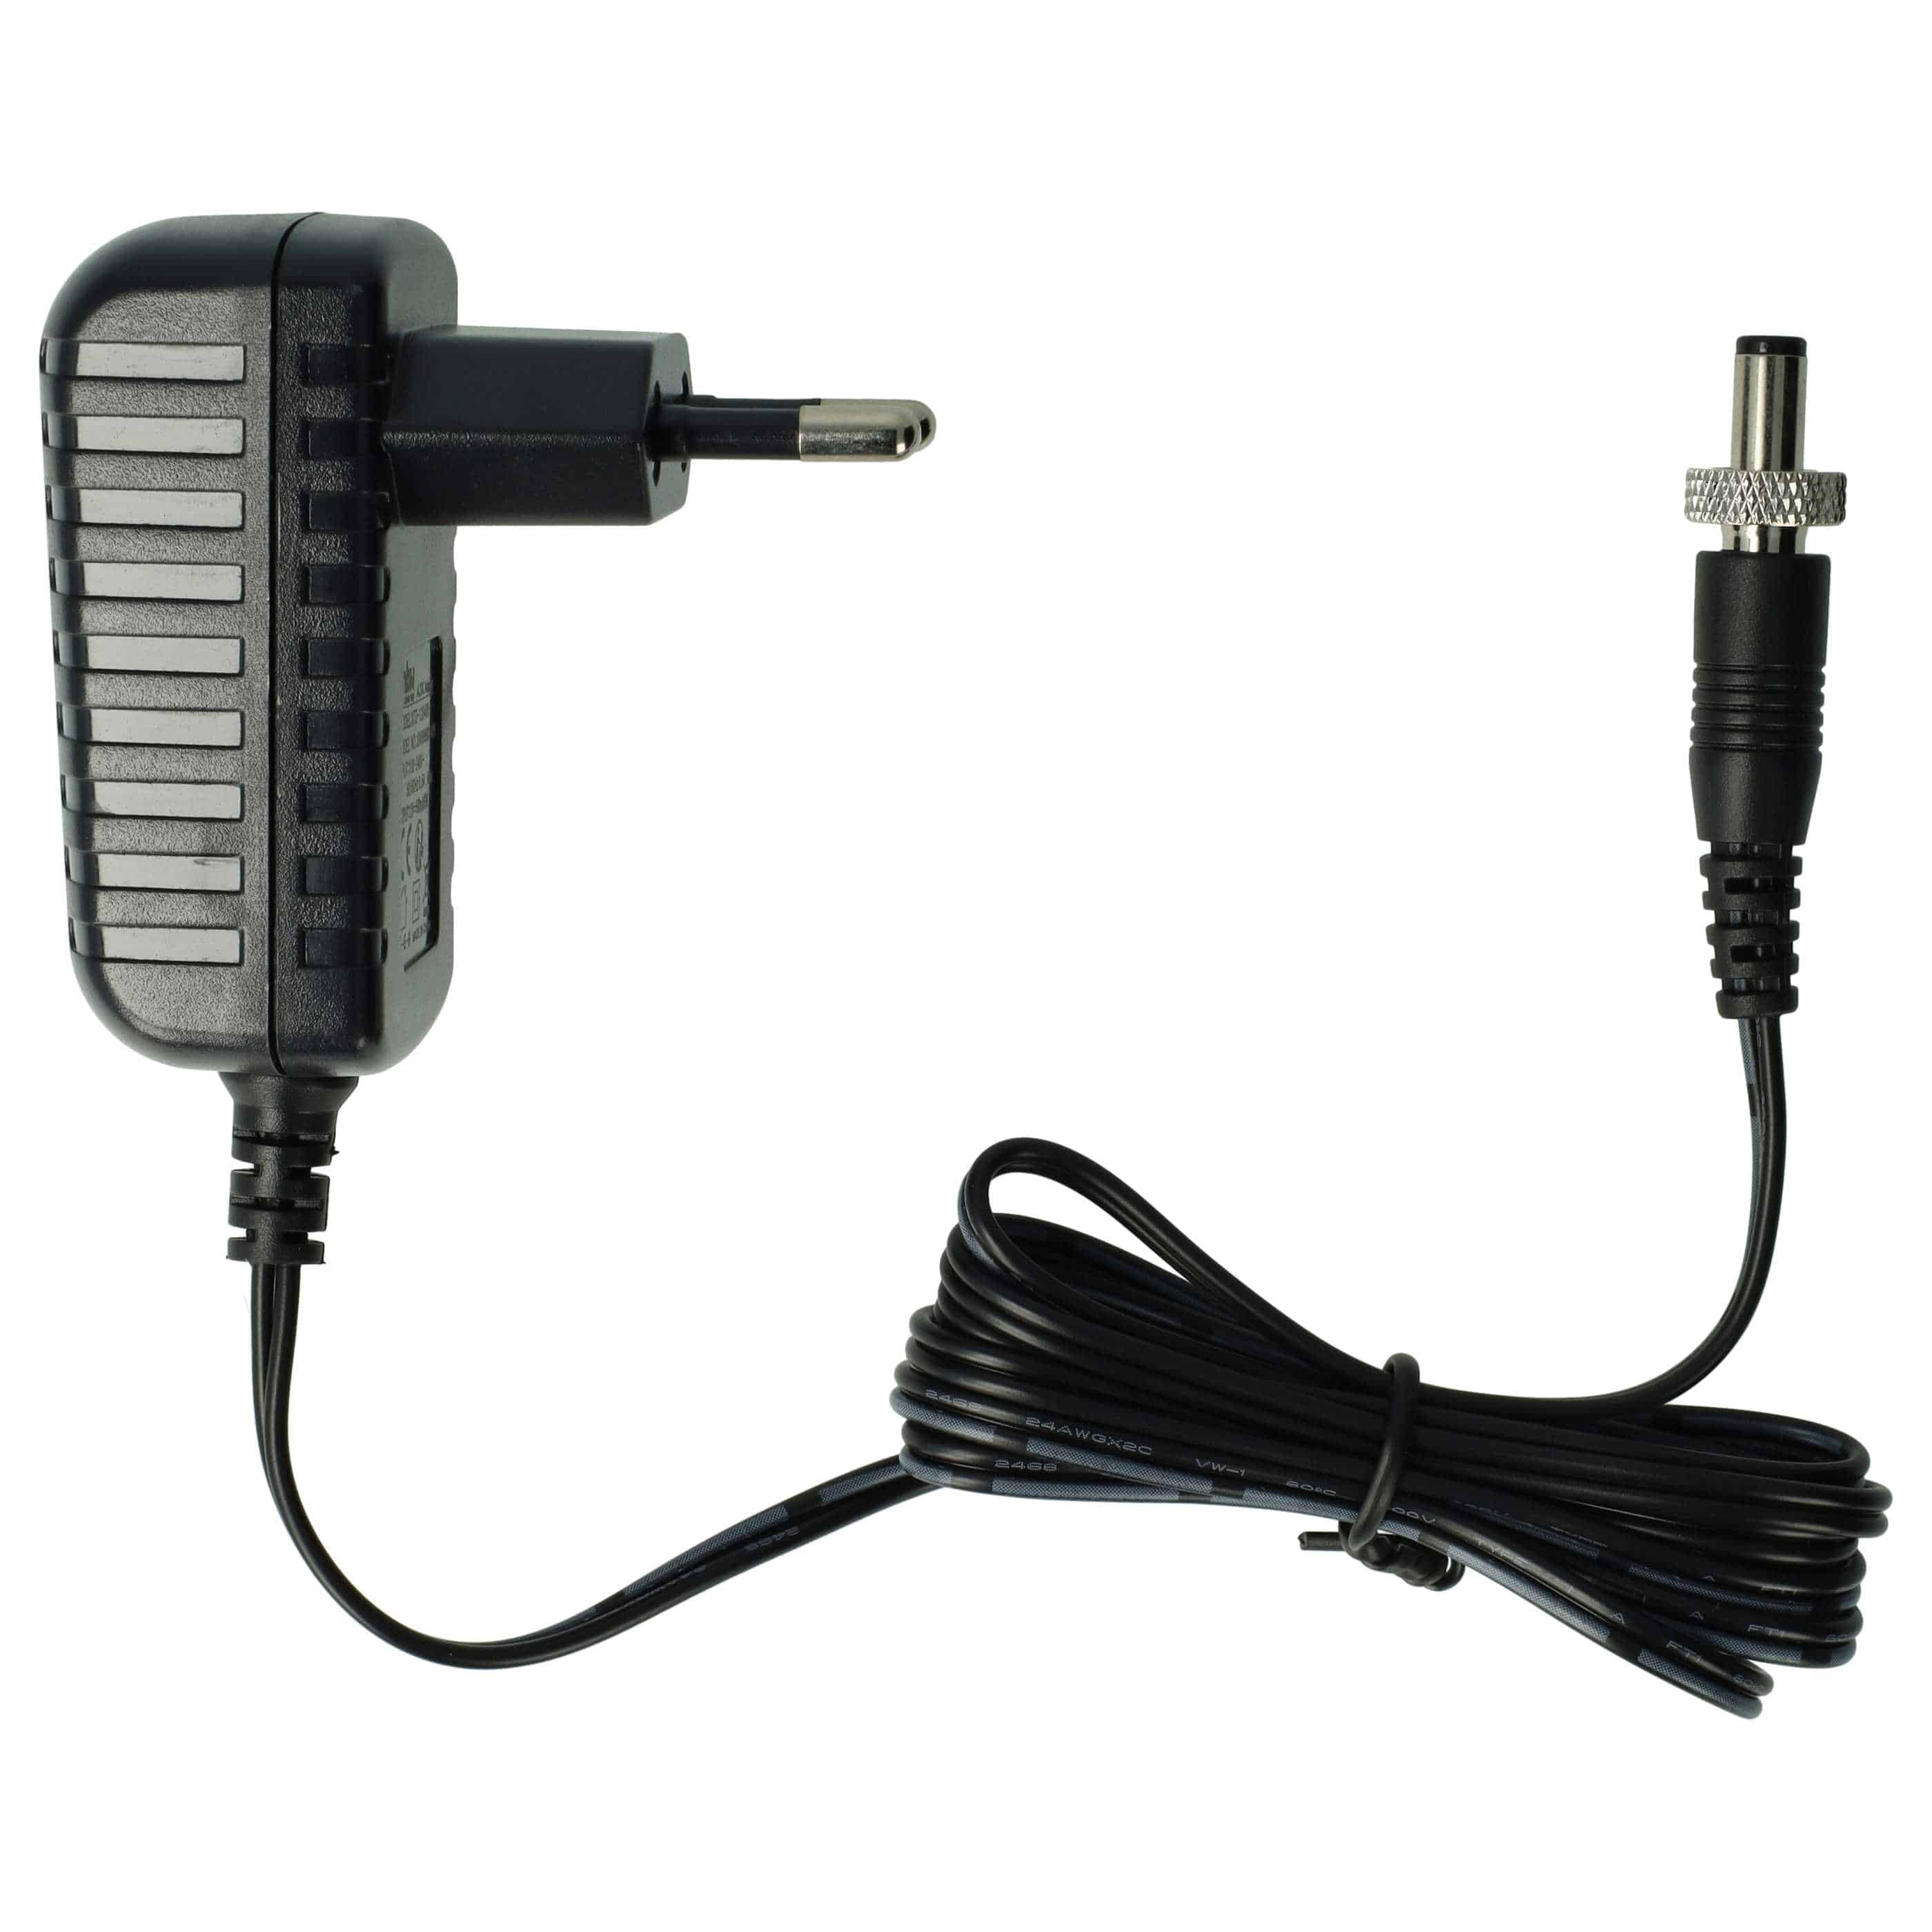 Mains Power Adapter replaces AKG AC 12/EU, S008ACM1200050 for AKG Radio